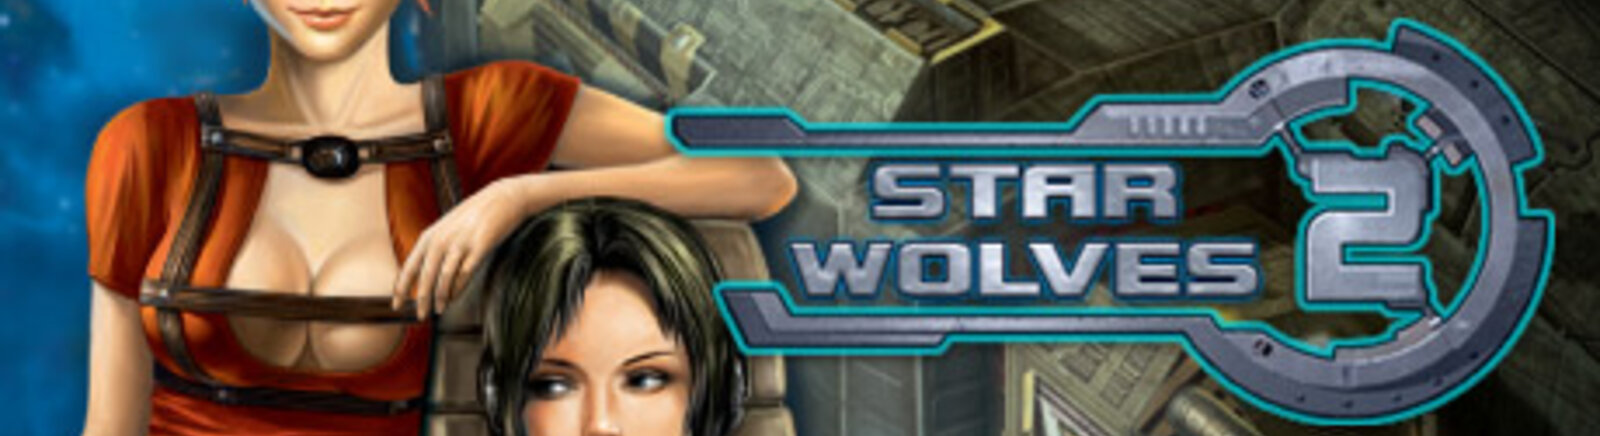 Дата выхода Star Wolves 2  на PC в России и во всем мире